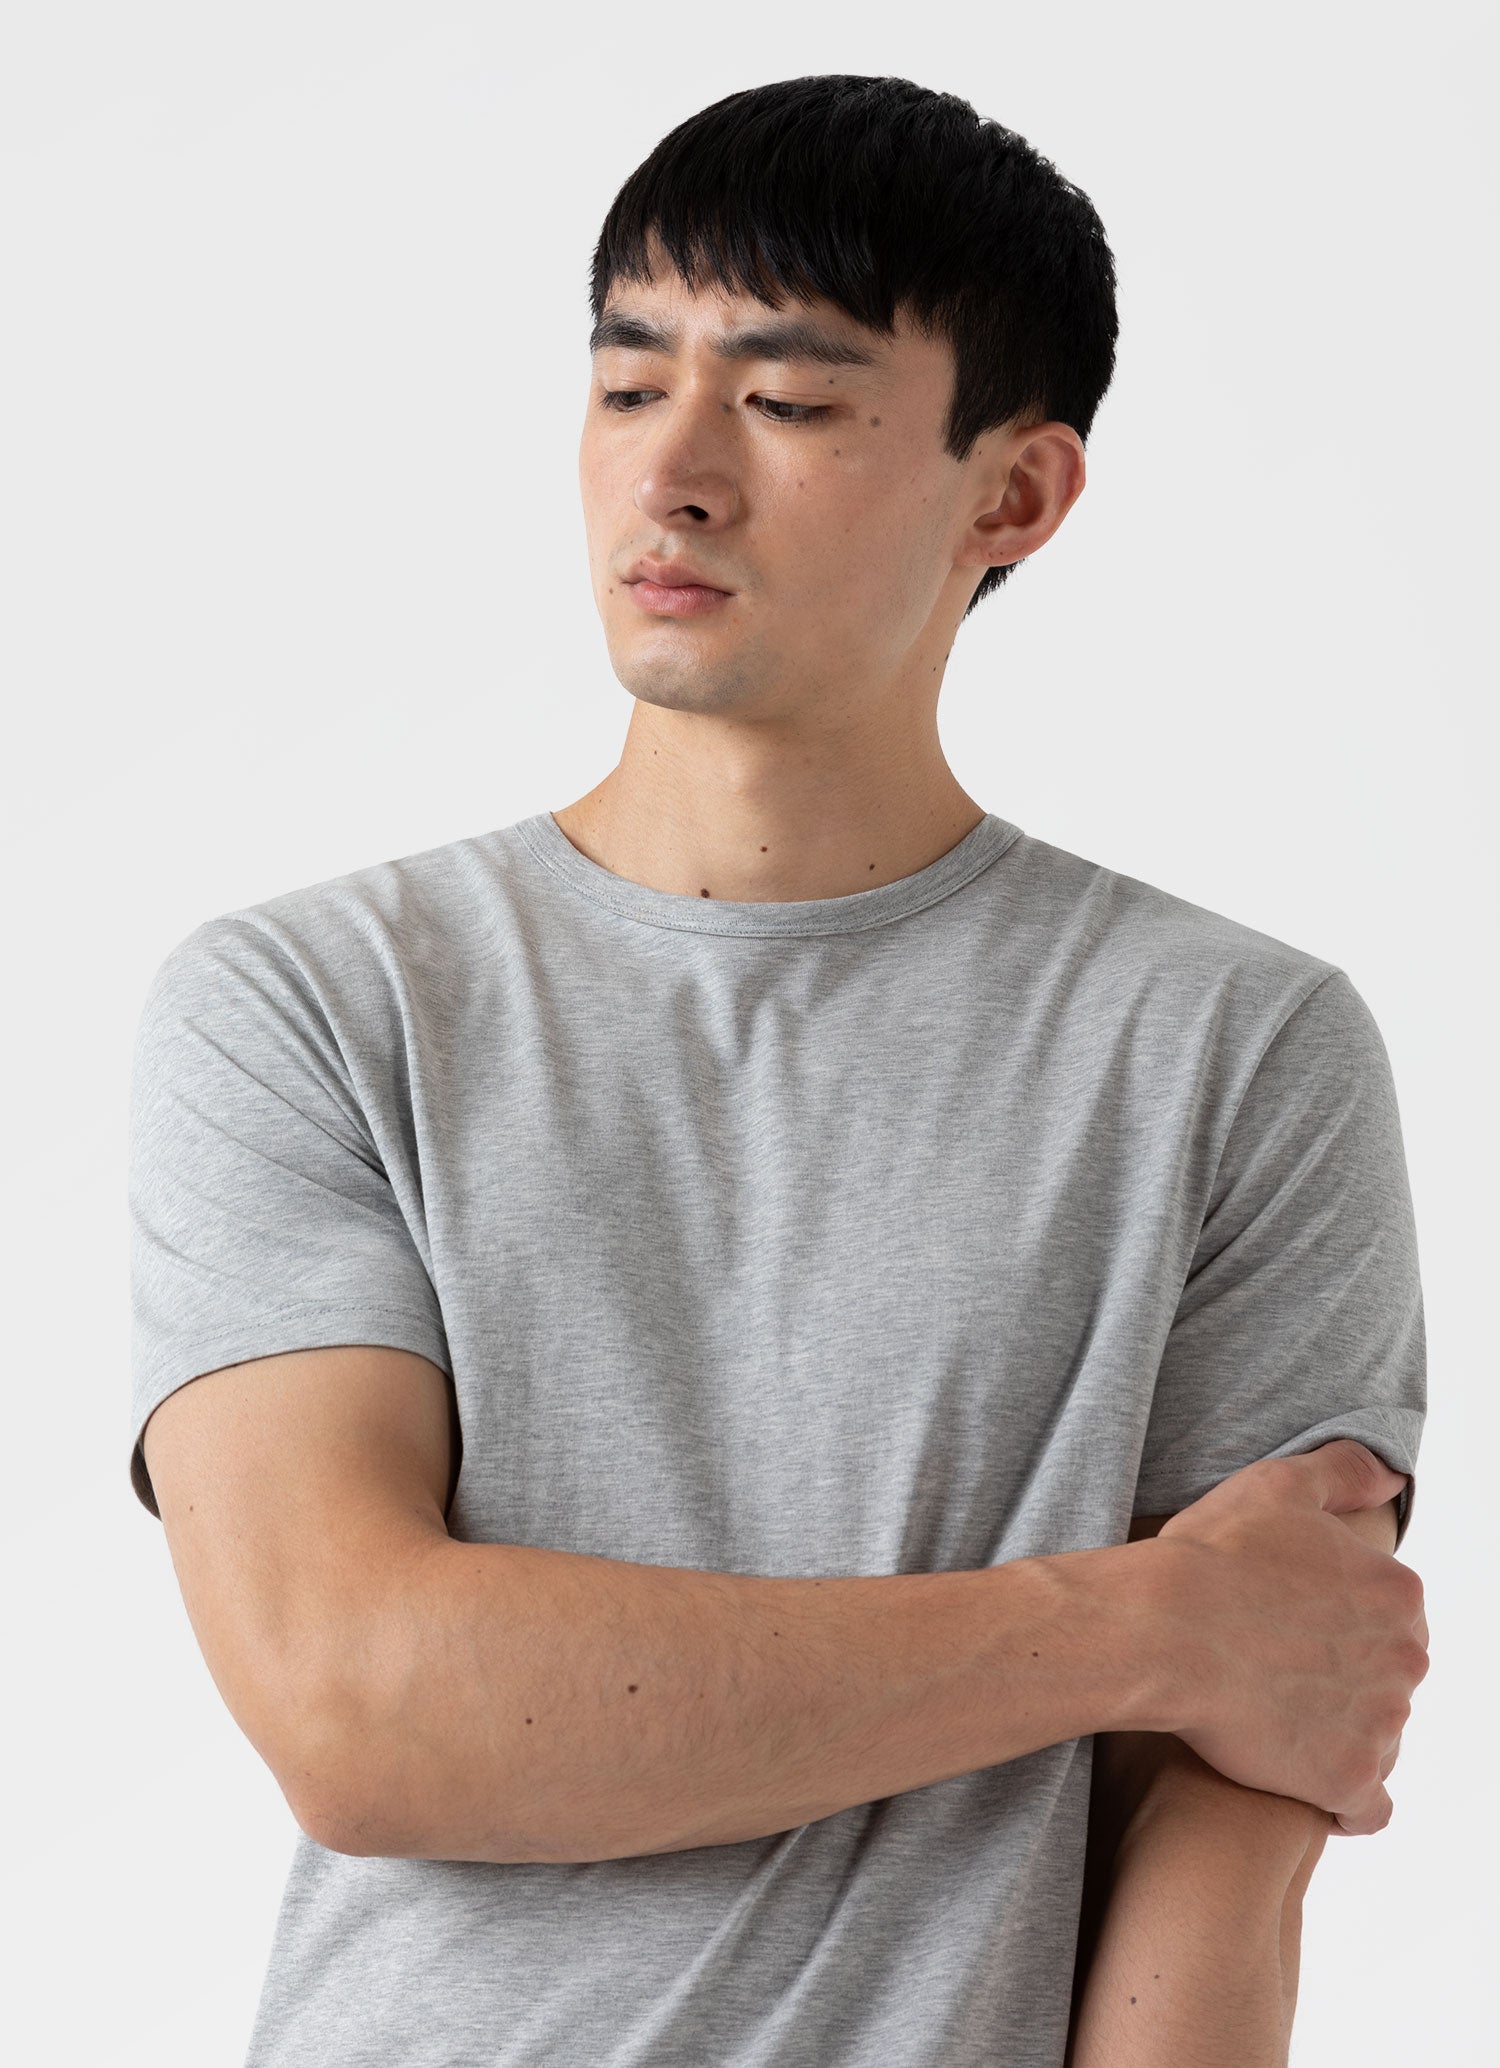 Men's Classic T-shirt in Grey Melange